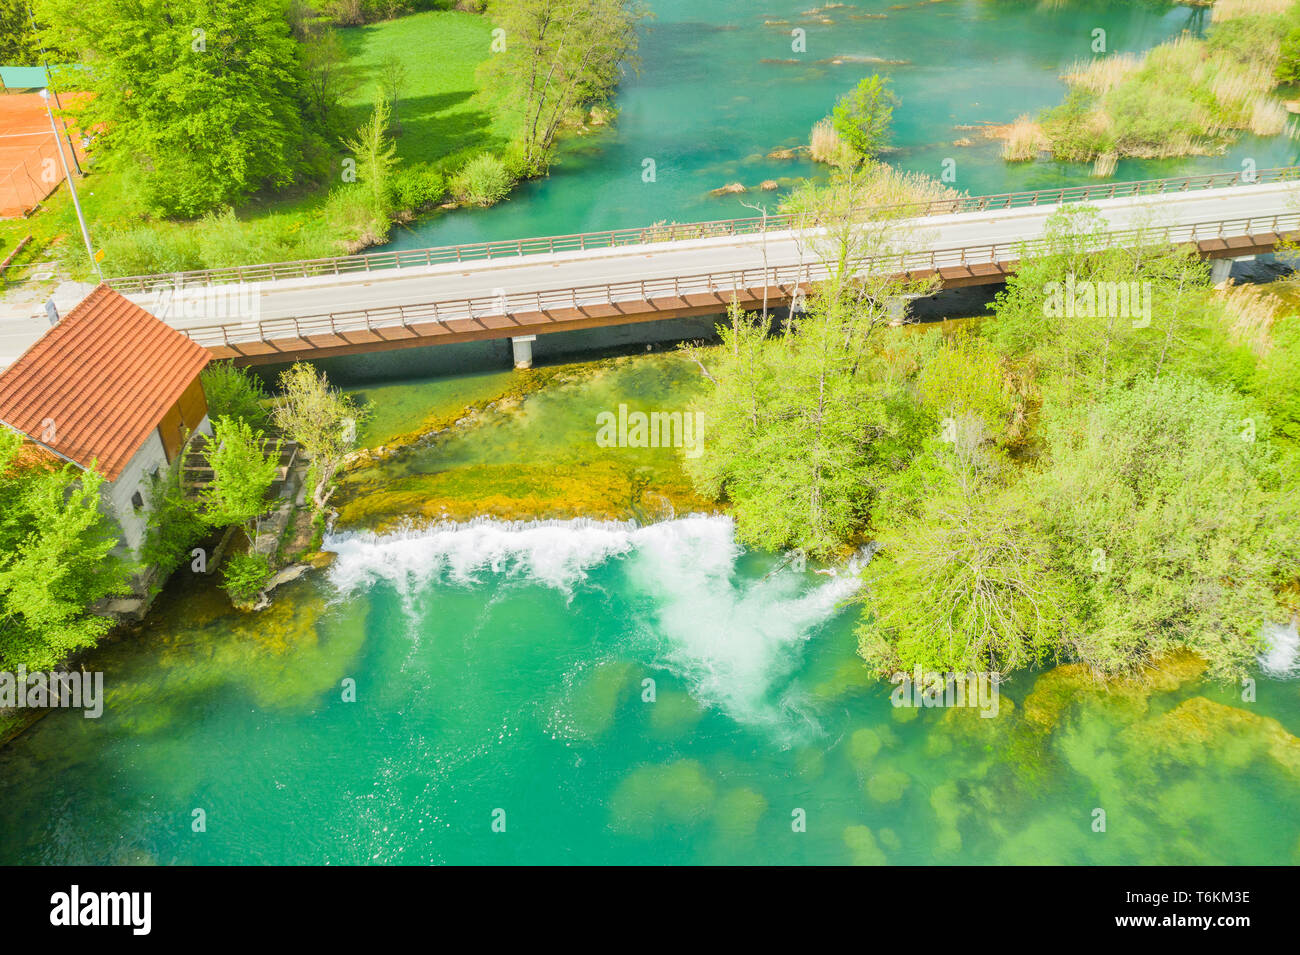 La Croatie, la verte campagne, rivière Mreznica à partir de l'air, vue panoramique sur village Belavici, chutes d'eau au printemps, célèbre destination touristique Banque D'Images